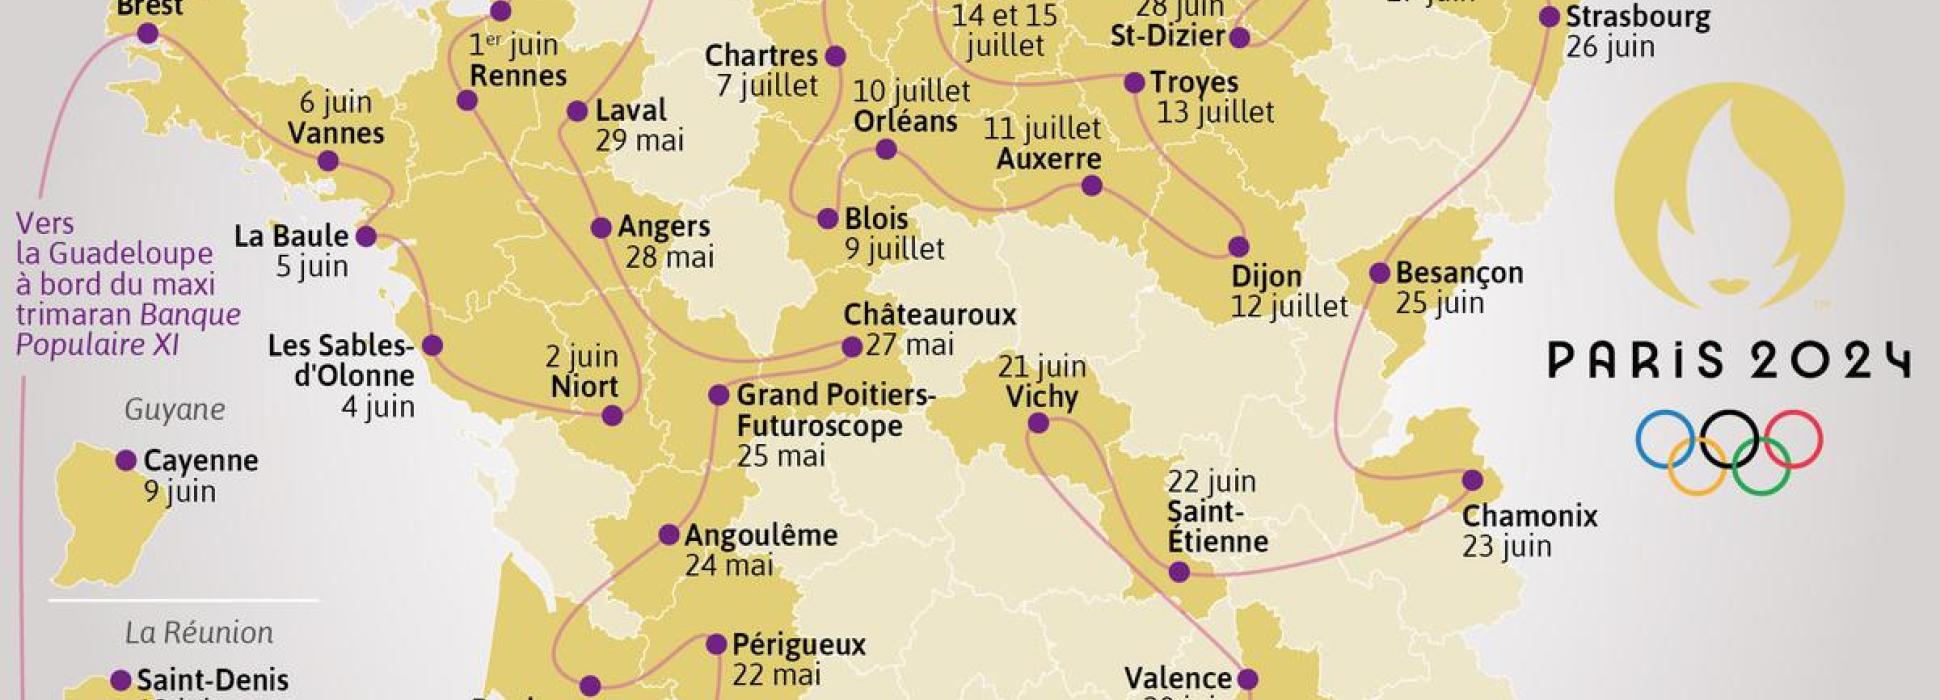 Caen, Niort, Le Havre y Troyes acogerán la llama olímpica